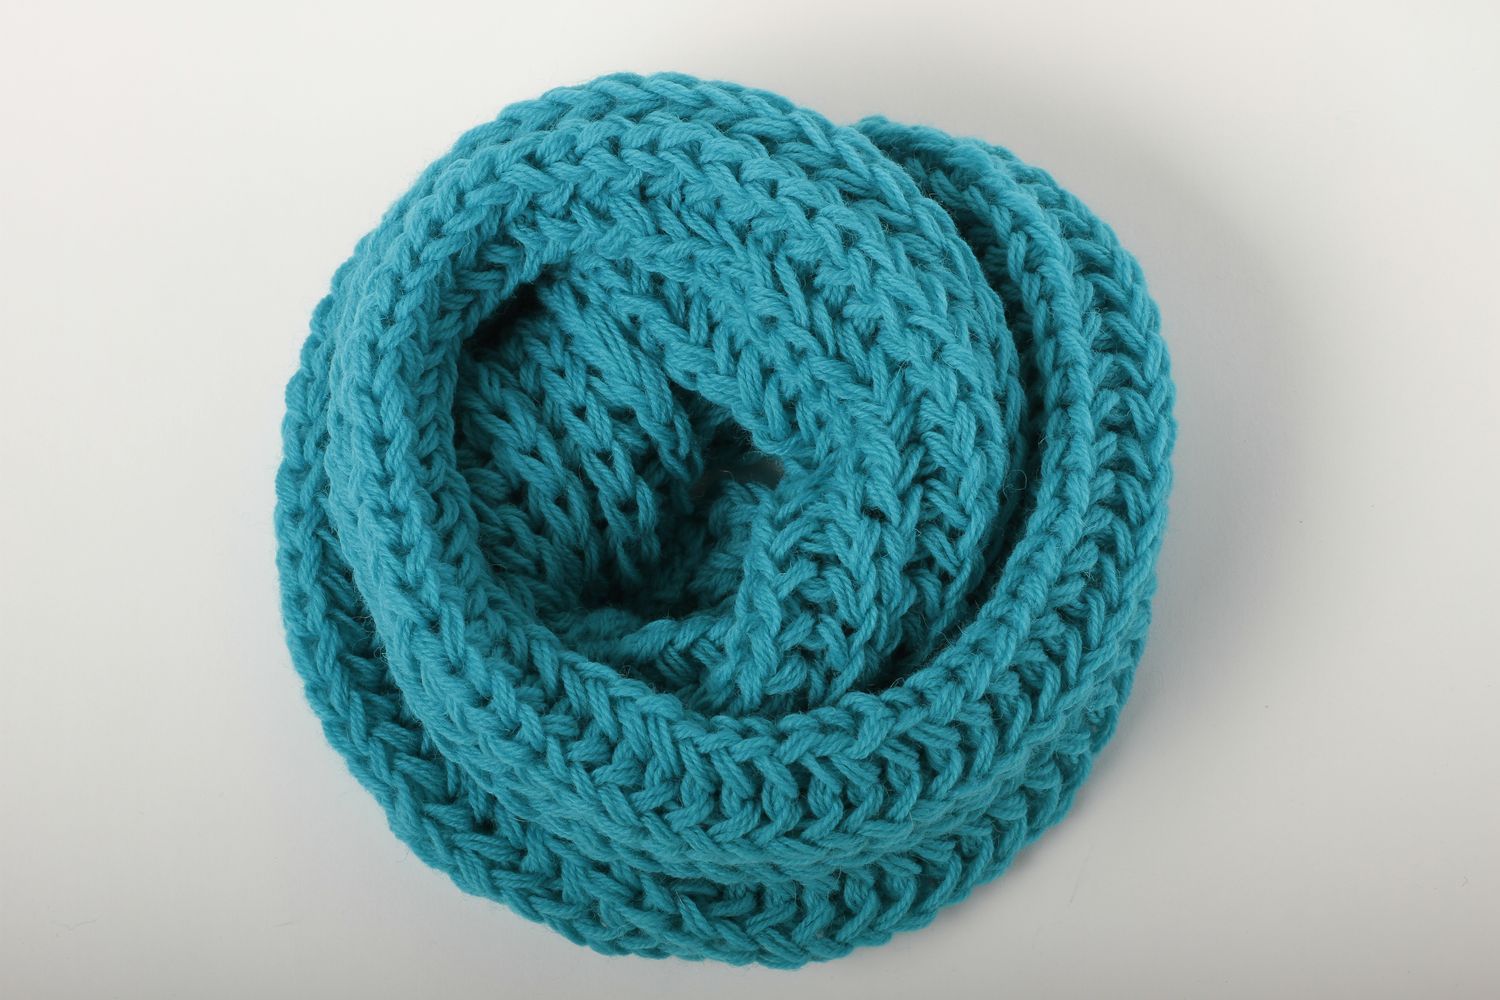 Écharpe bleue faite main Vêtement femme tricotée en laine chaude Idée cadeau photo 5